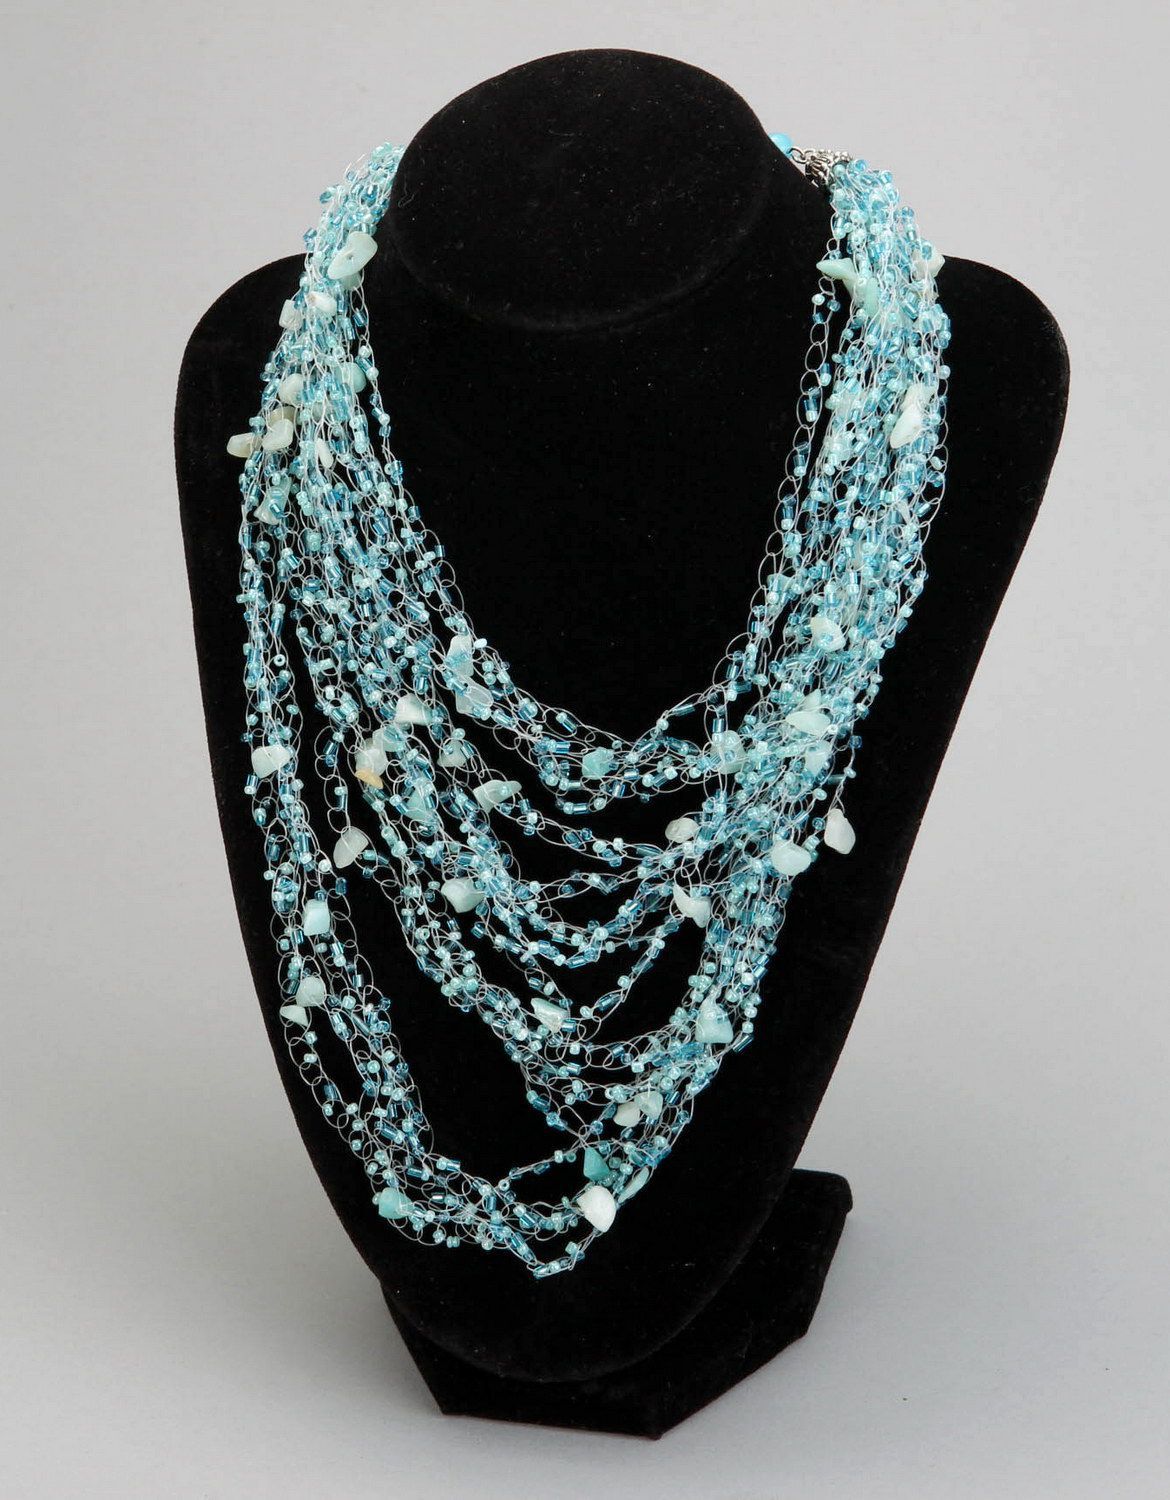 Necklace made of aquamarine fragments photo 3